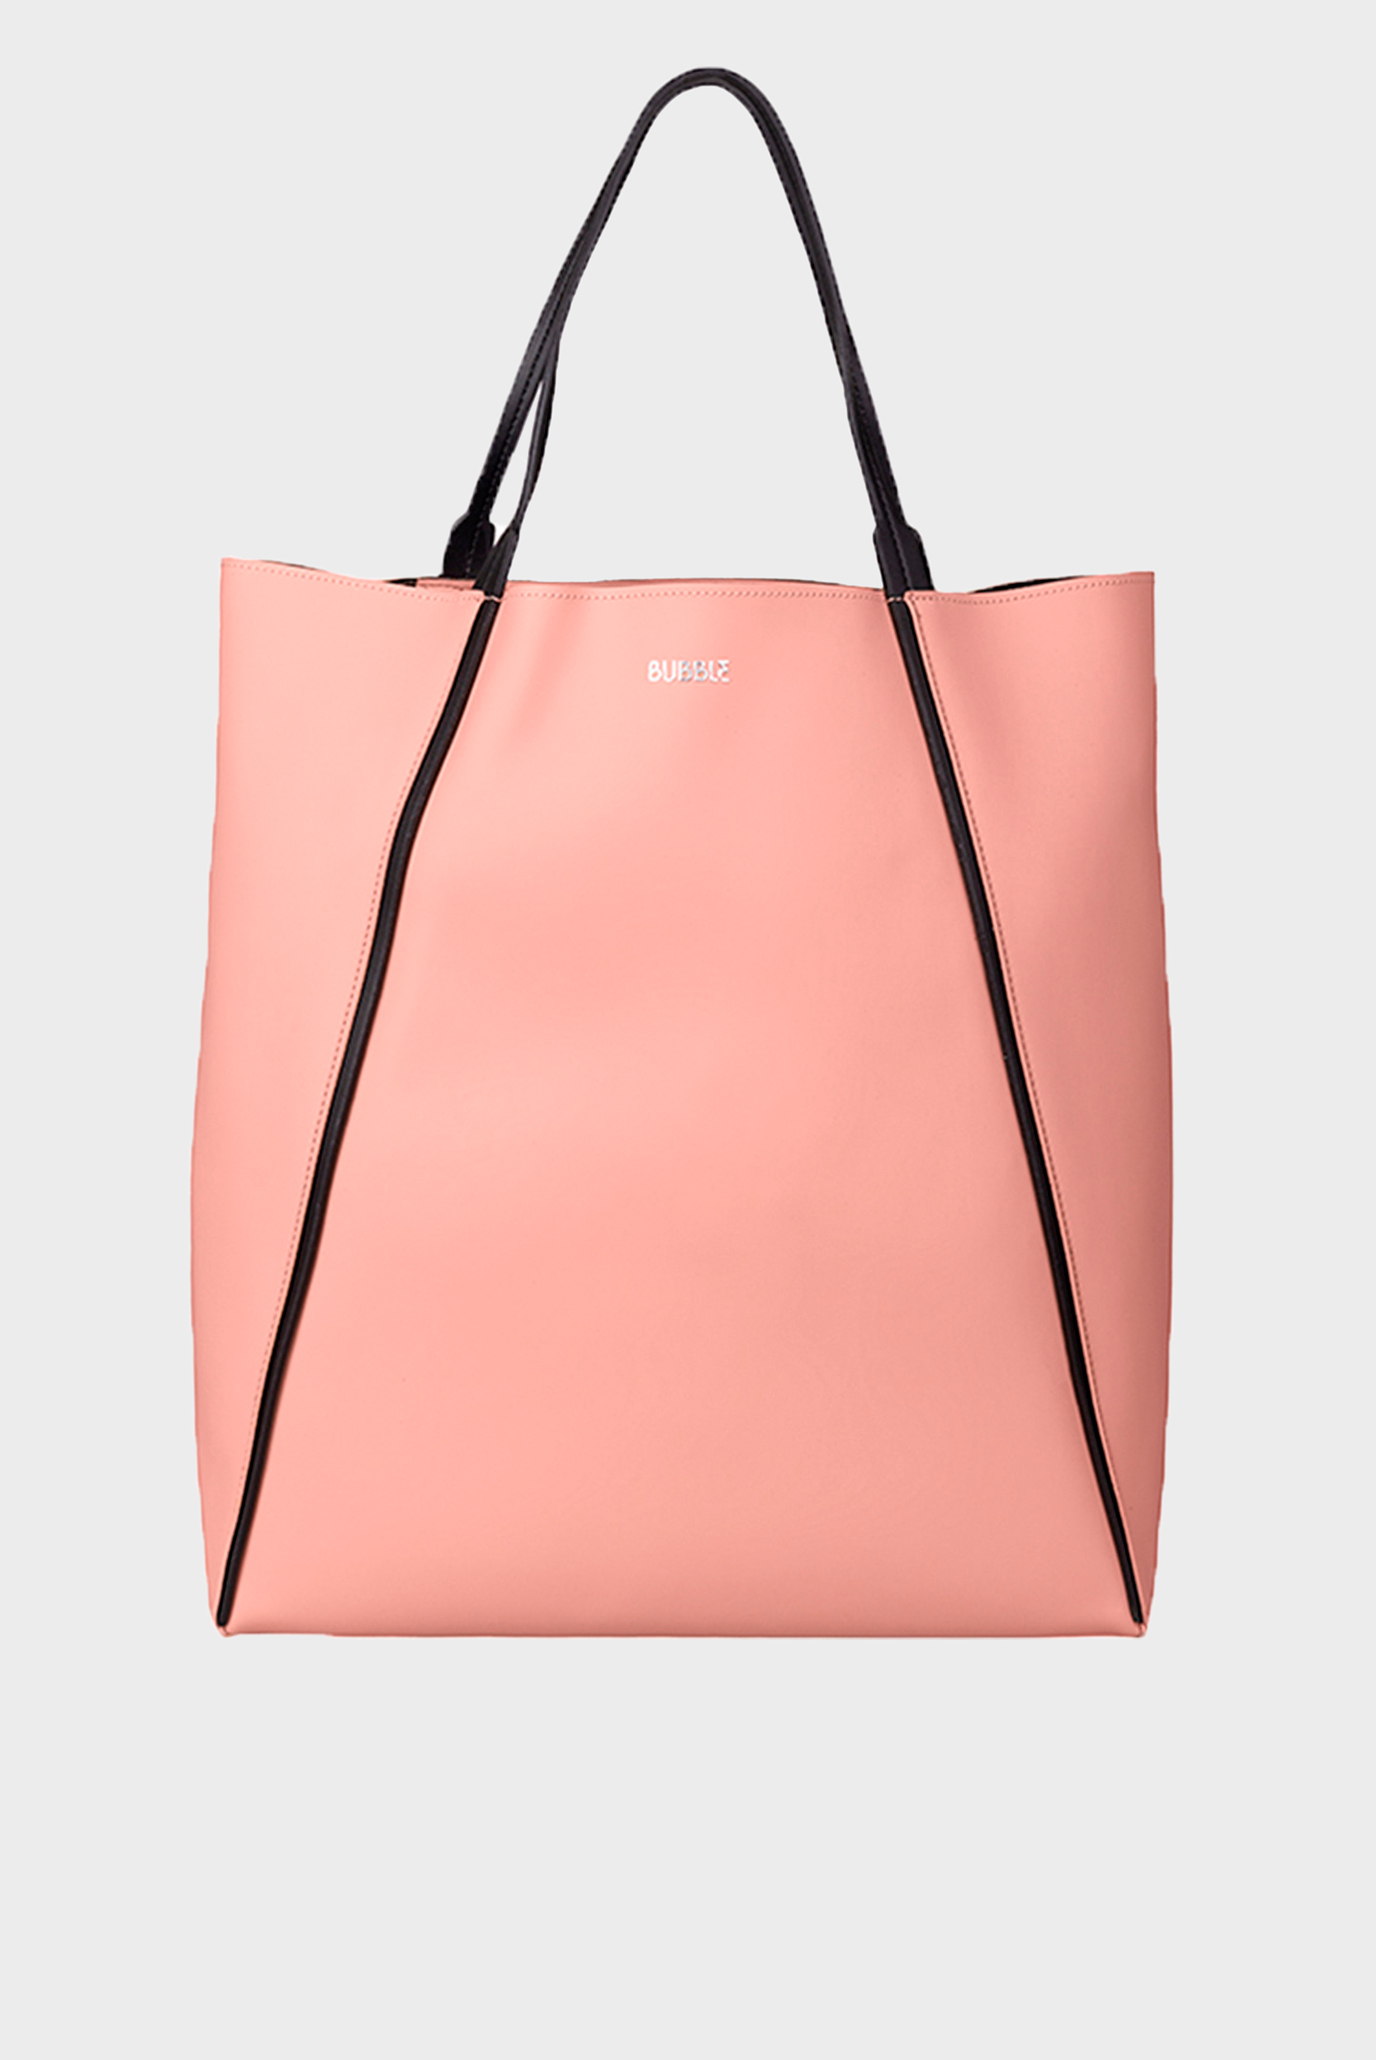 Жіноча рожева сумка SHOPPY 1